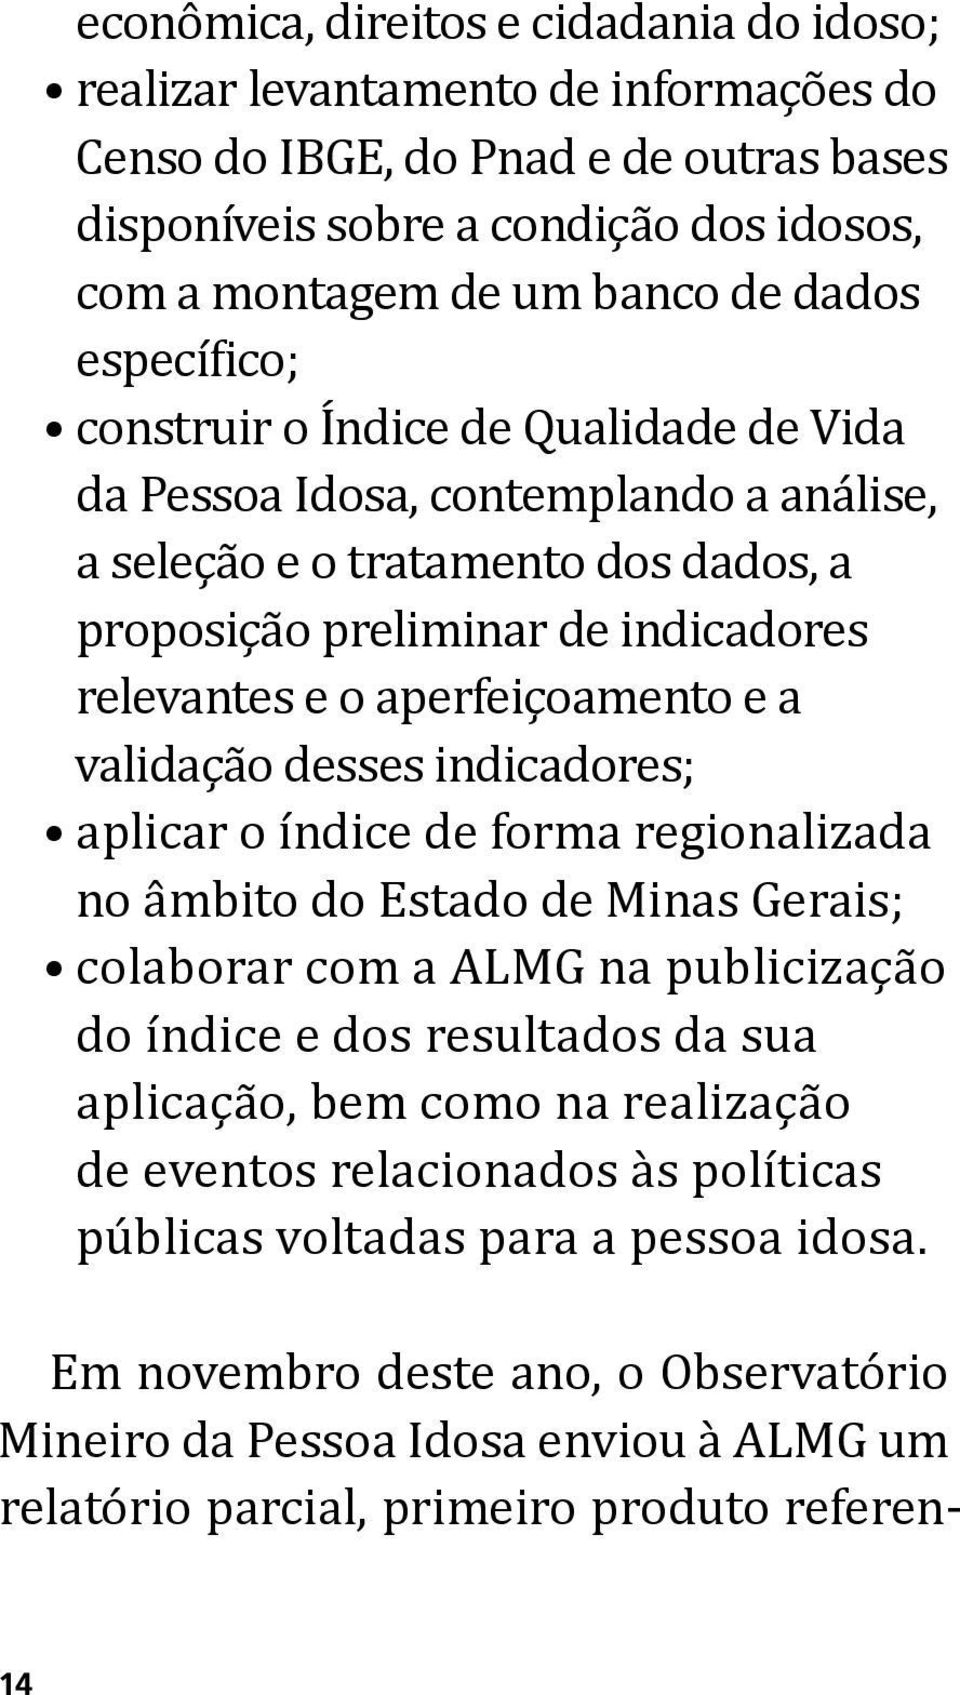 e a validação desses indicadores; aplicar o índice de forma regionalizada no âmbito do Estado de Minas Gerais; colaborar com a ALMG na publicização do índice e dos resultados da sua aplicação, bem